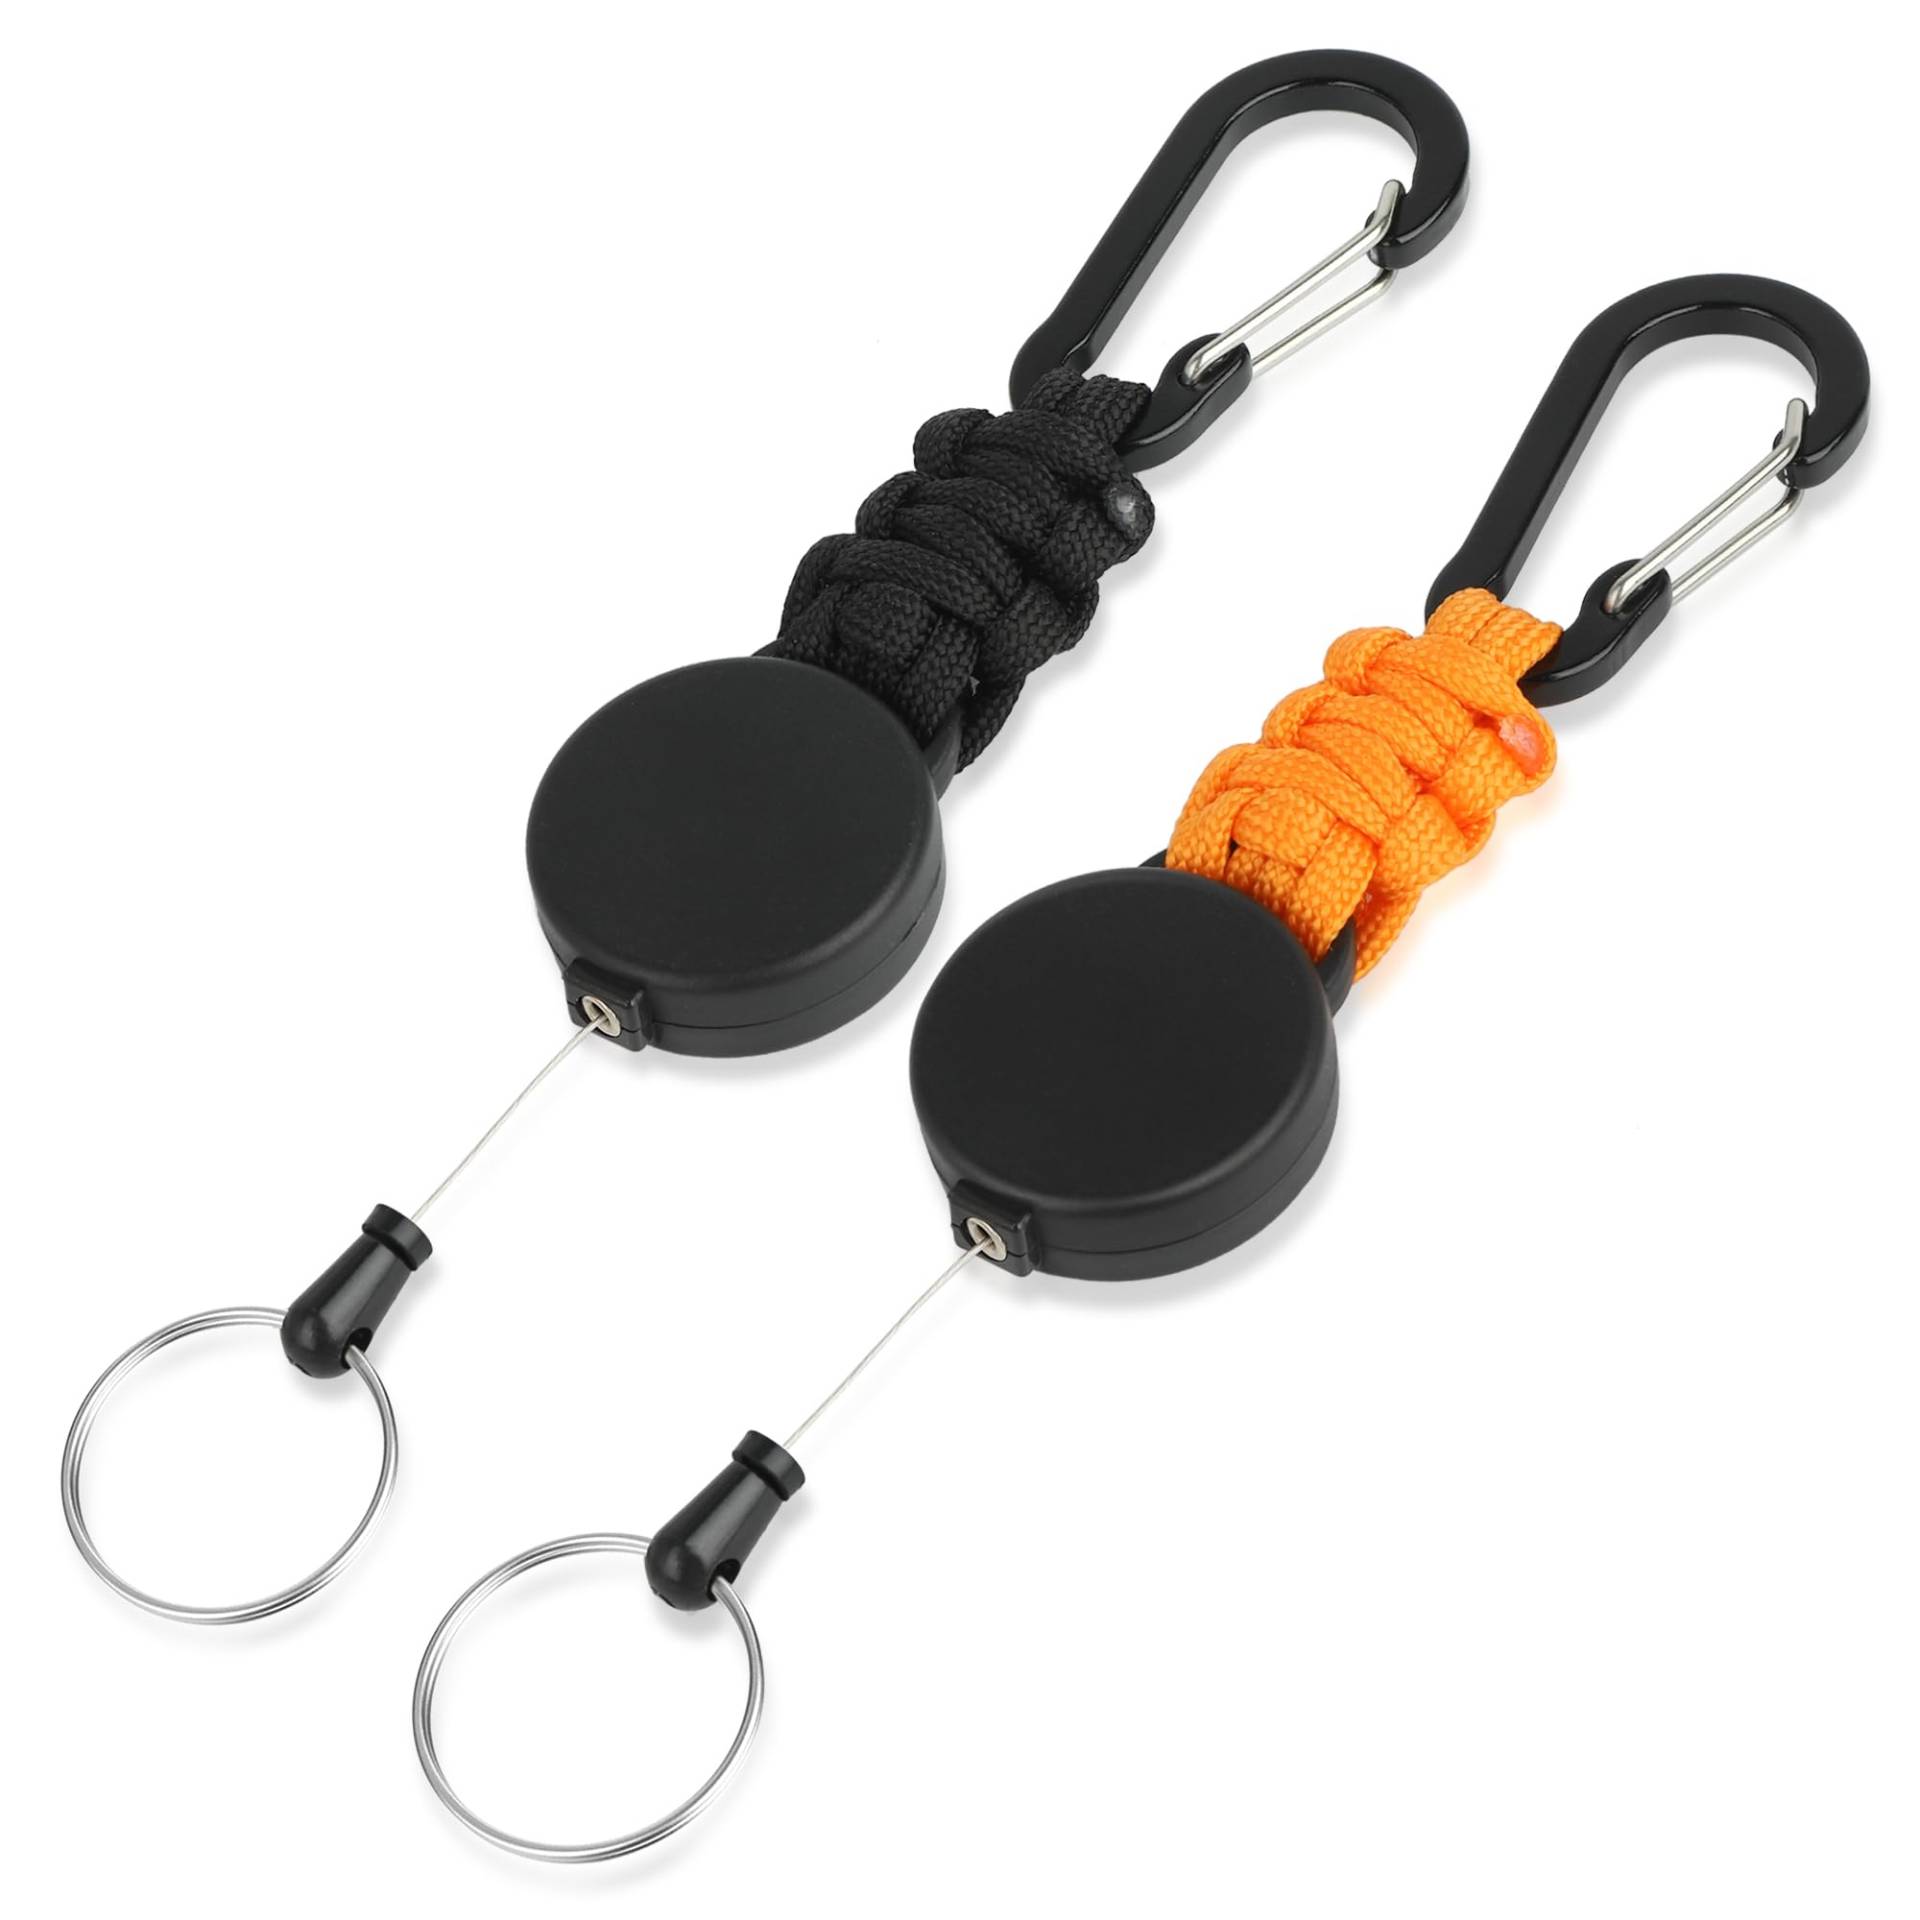 EOTW Schlüsselanhänger Ausziehbar, Schlüsselband Einziehbarer Ausweis mit 60cm Ausziehbar Stahlseil,Karabinerhaken Schlüsselring für Schlüssel, Gürtelclip und Kartenhalter,Schwarz + Orange von EOTW